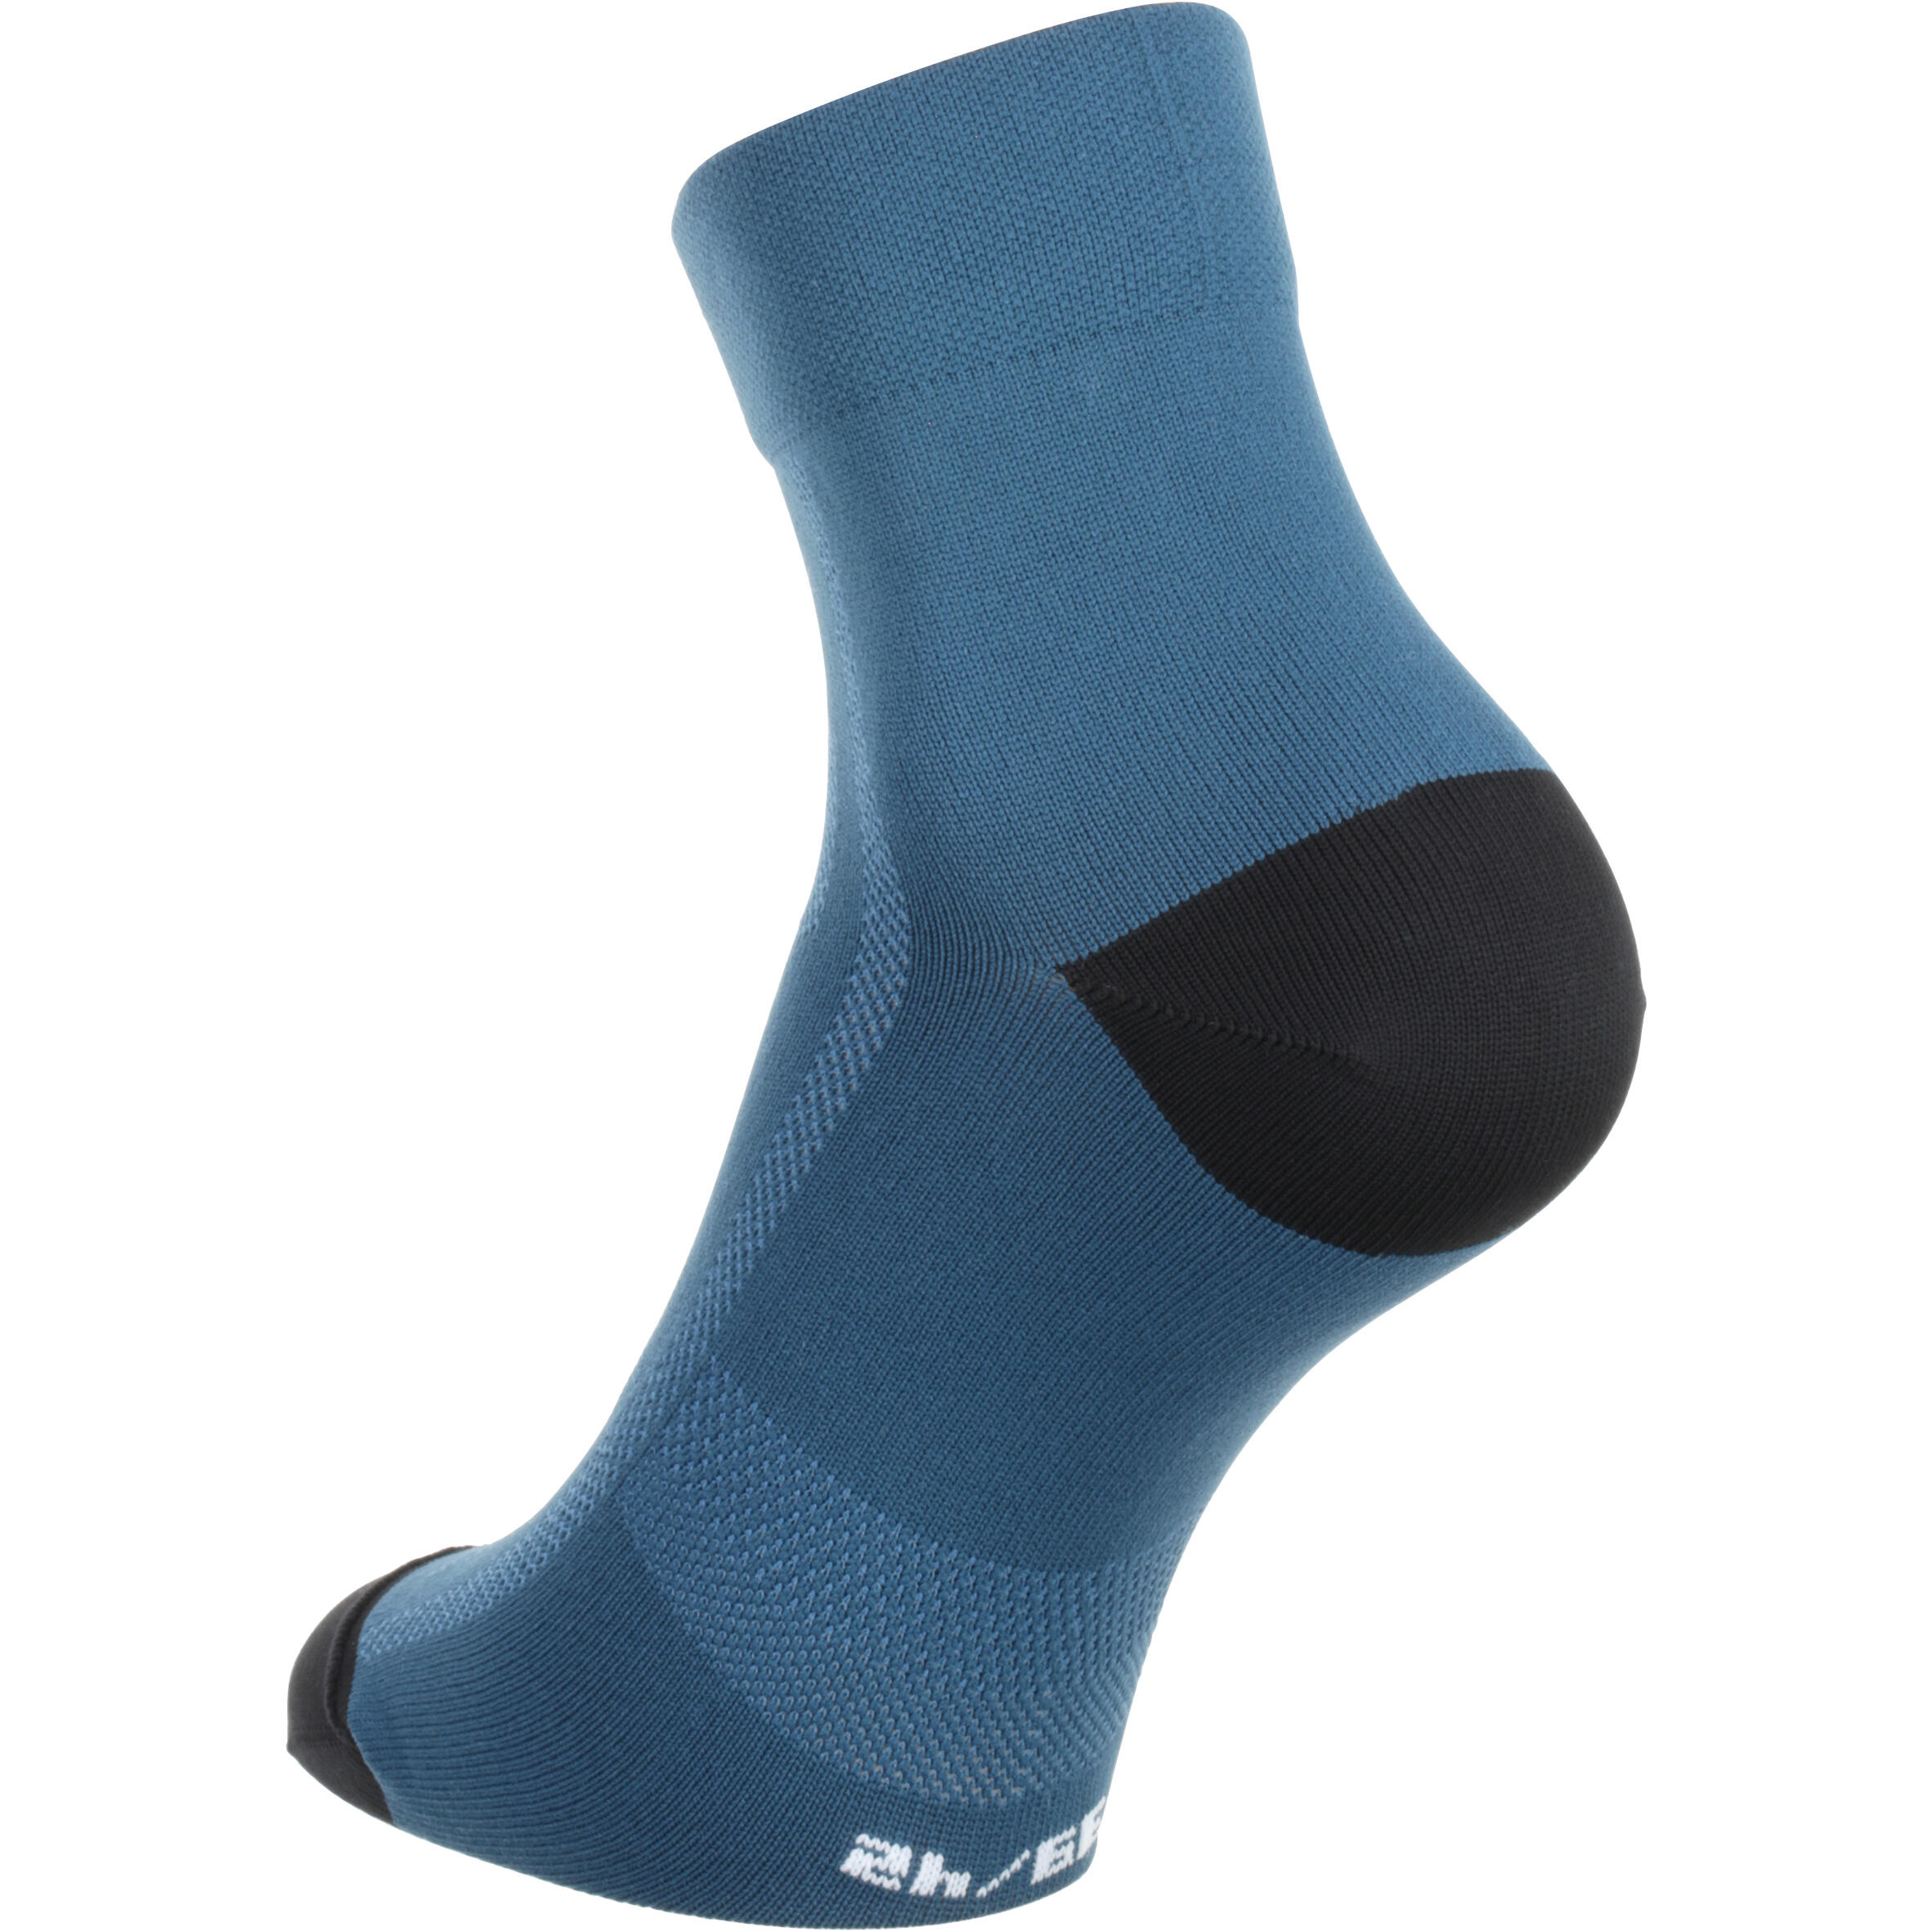 500 Cycling Socks - Dark Blue 2/8